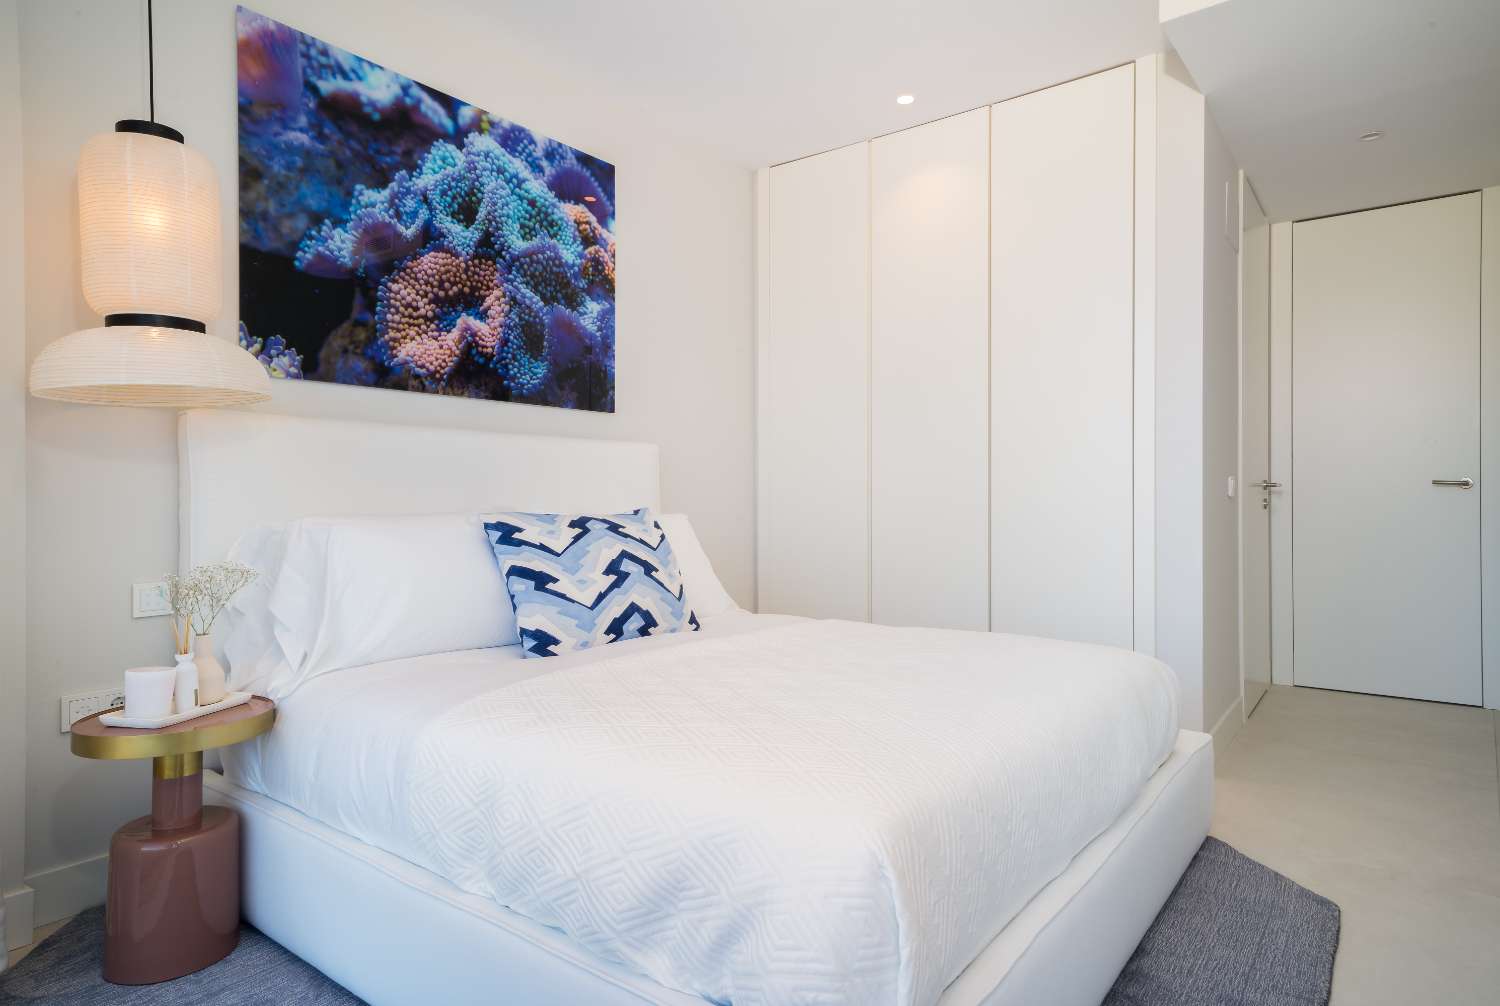 بنتهاوس دوبلكس رائع من 4 غرف نوم مع مناظر بانورامية للبحر. يشمل السعر التصميم الداخلي من Aalto.